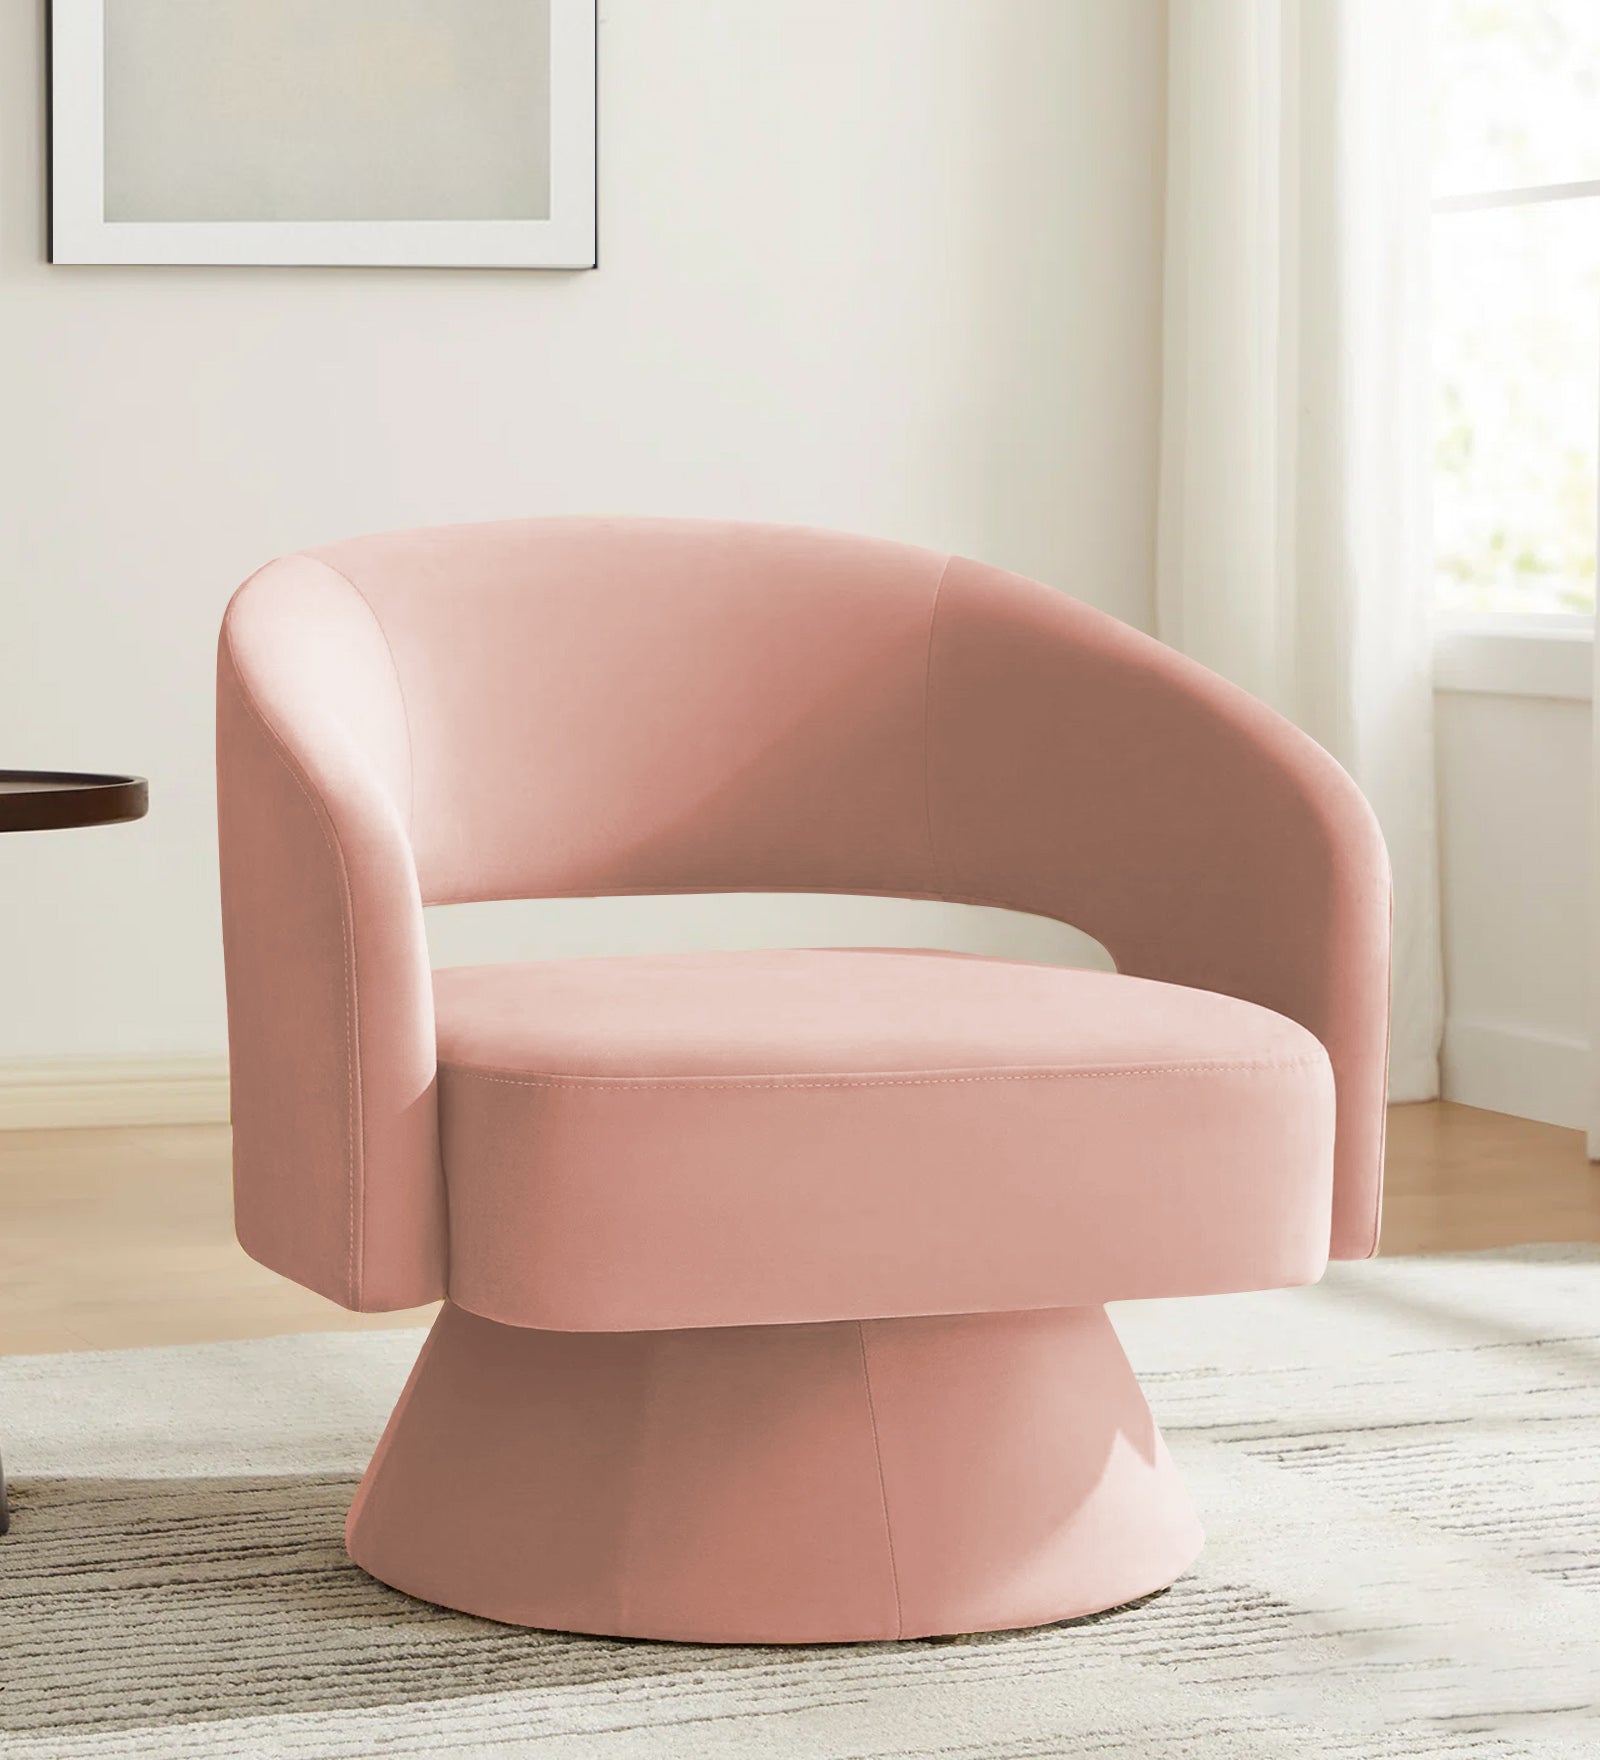 Pendra Velvet Swivel Chair in Blush Pink Colour